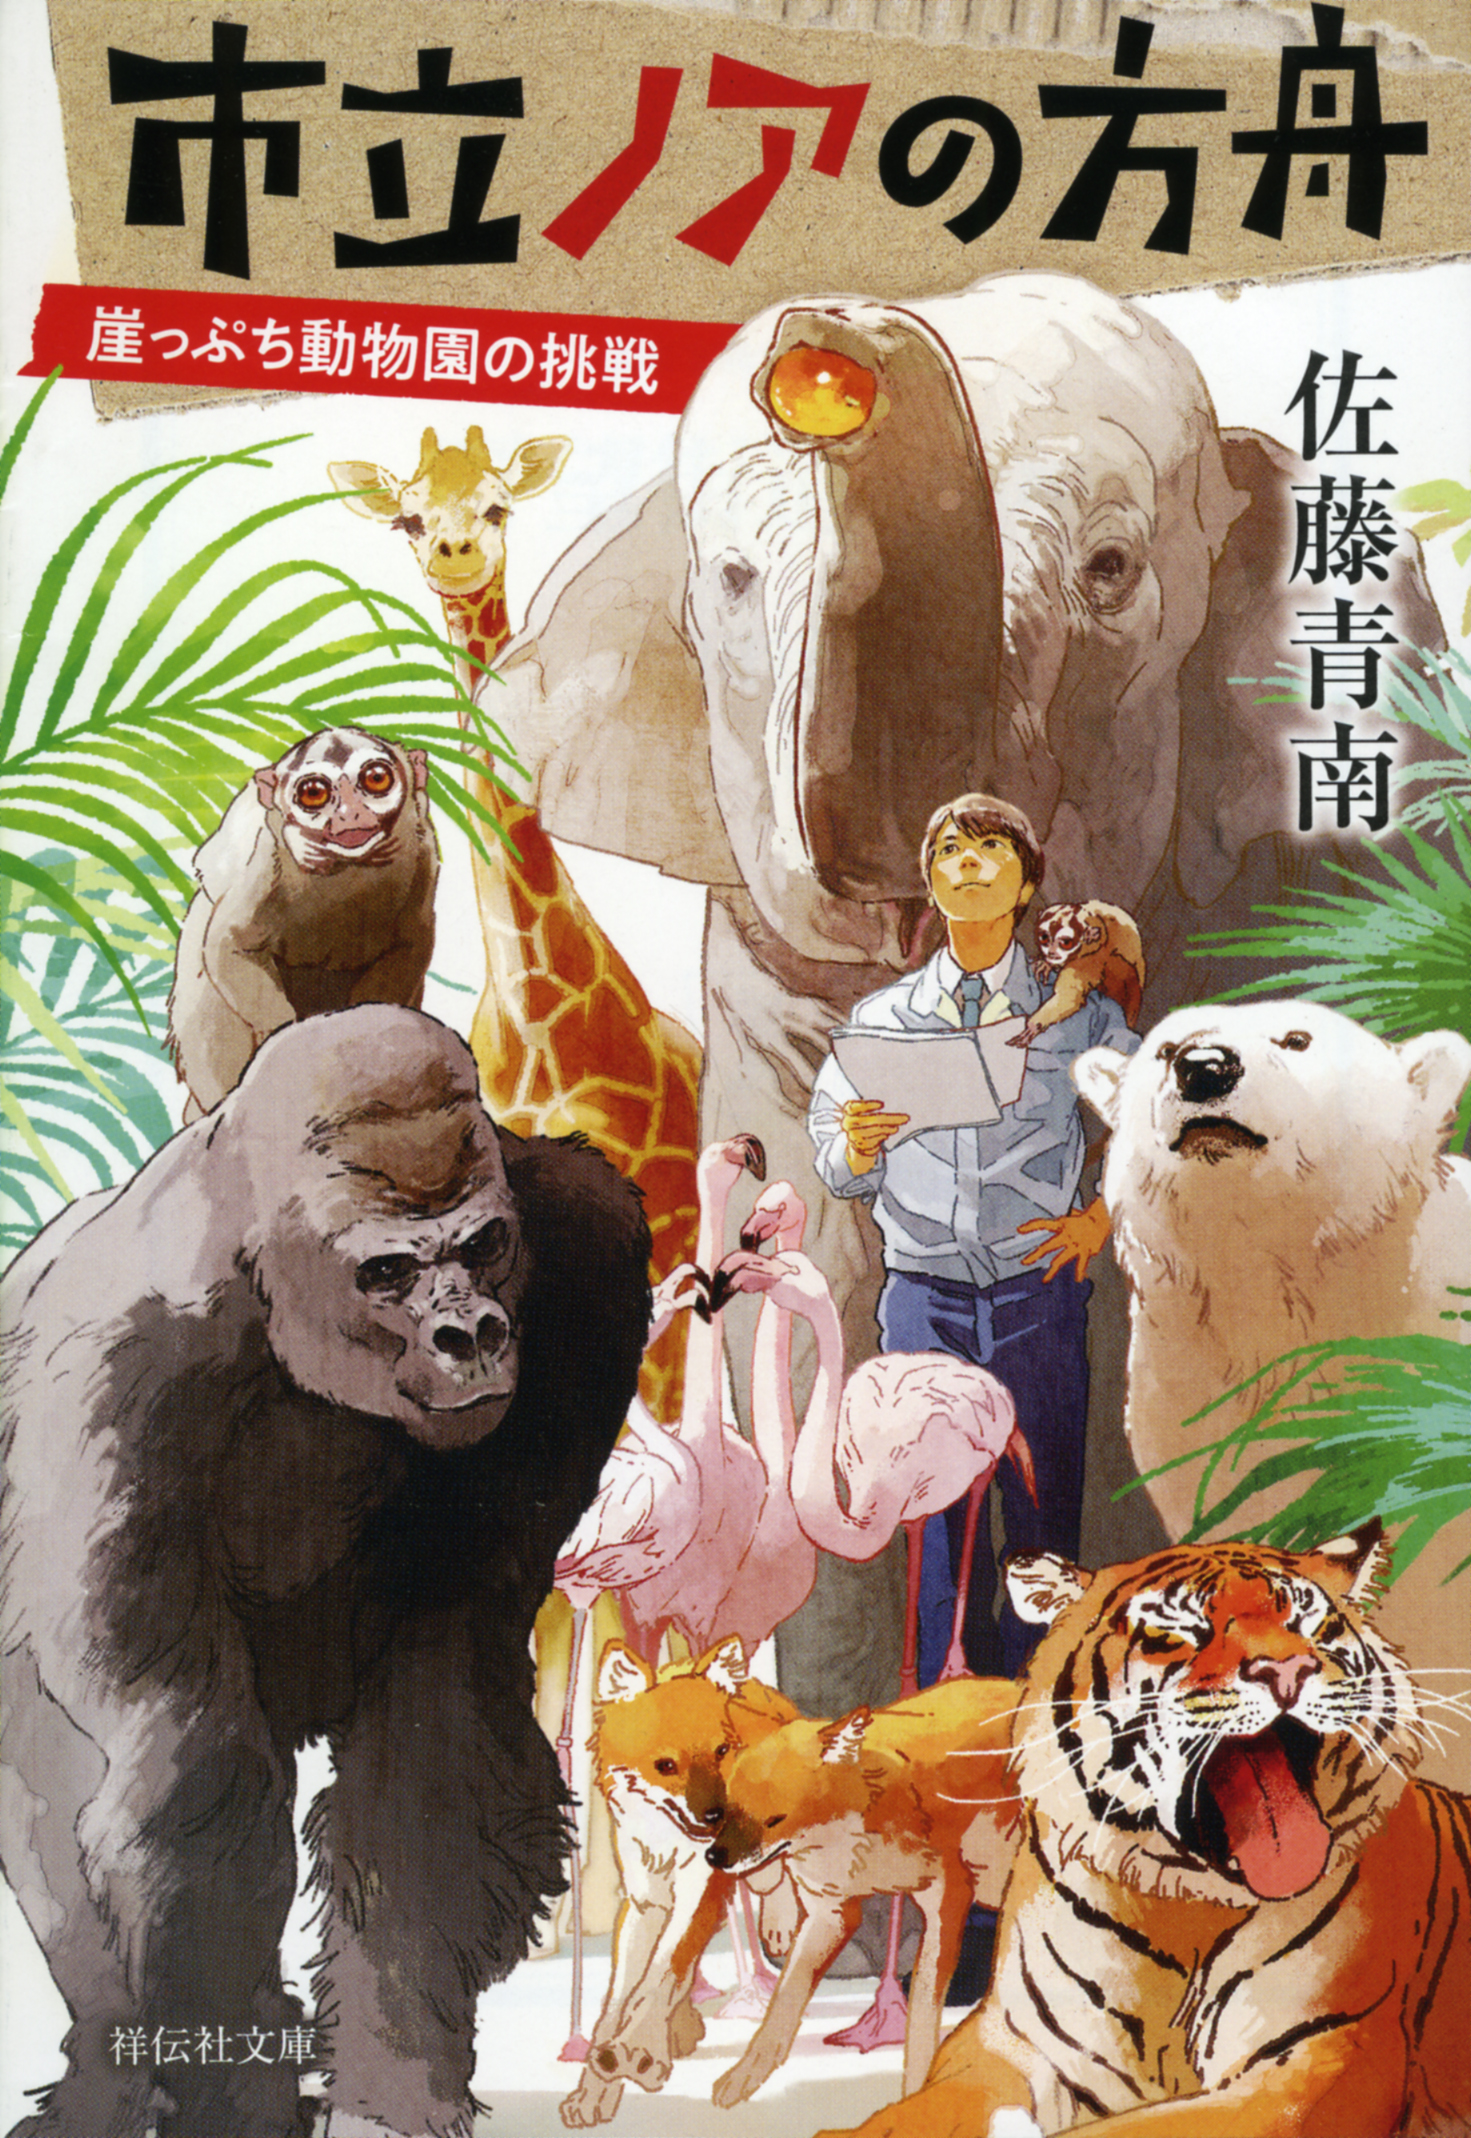 崖っぷち動物園の挑戦の商品画像